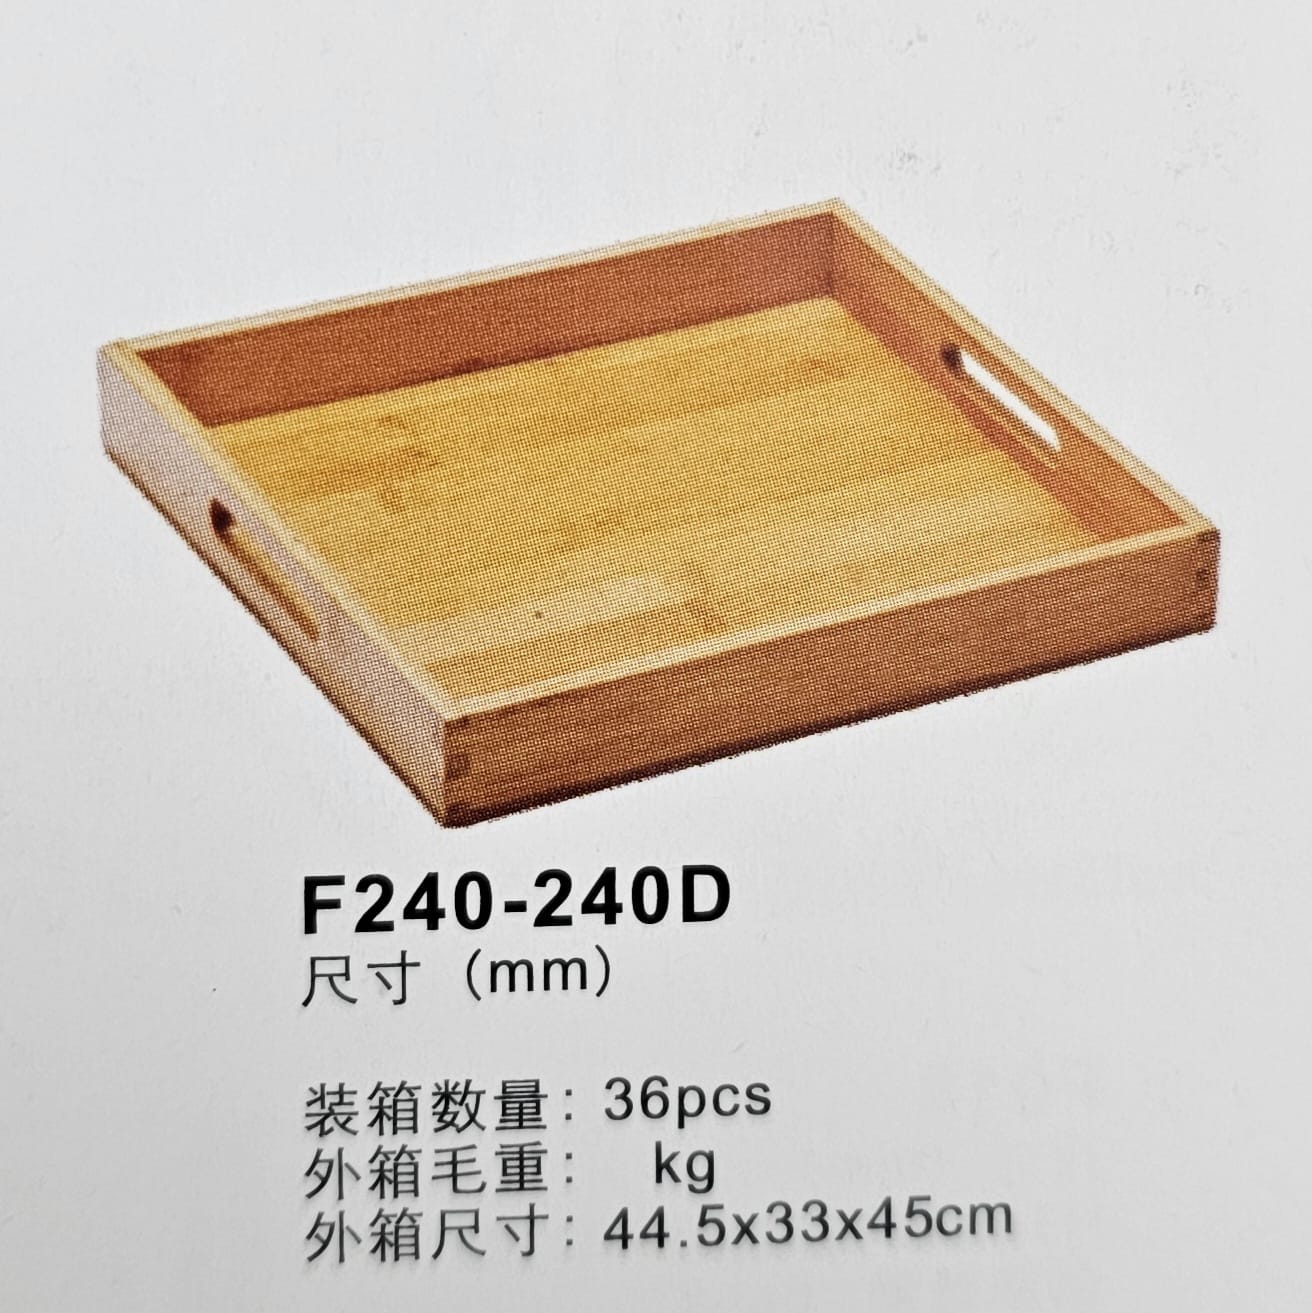 מגש עץ עם ידיות ‎ 24X24X3.5H ס"מ